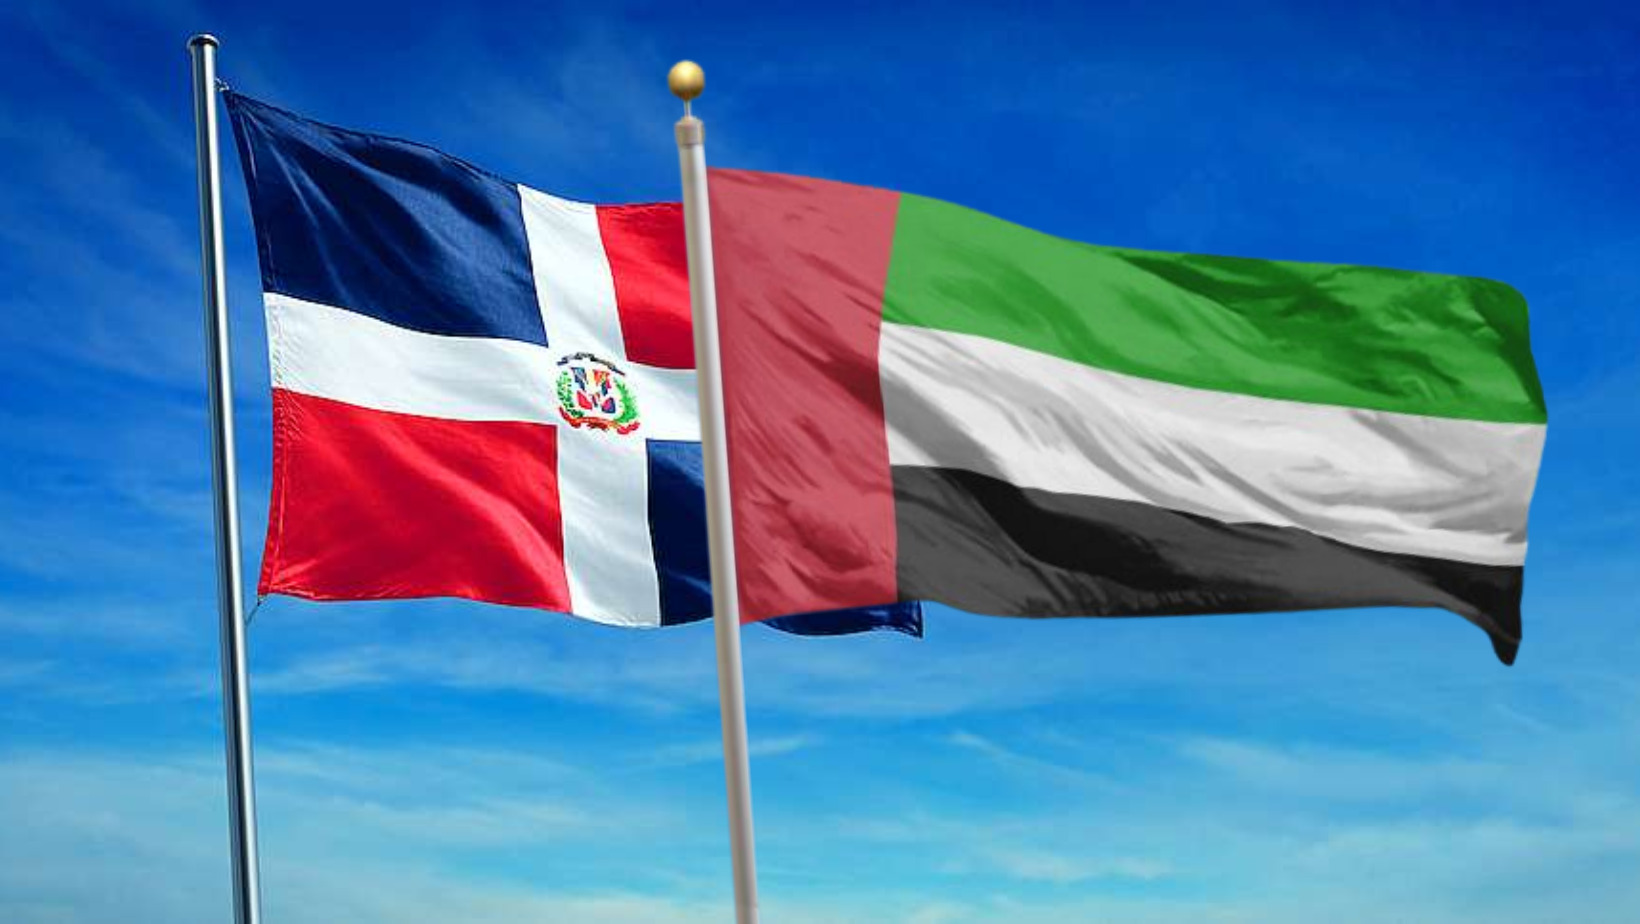 Banderas de República Dominicana y de Emiratos Árabes Unidos. FOTO: Fuente externa